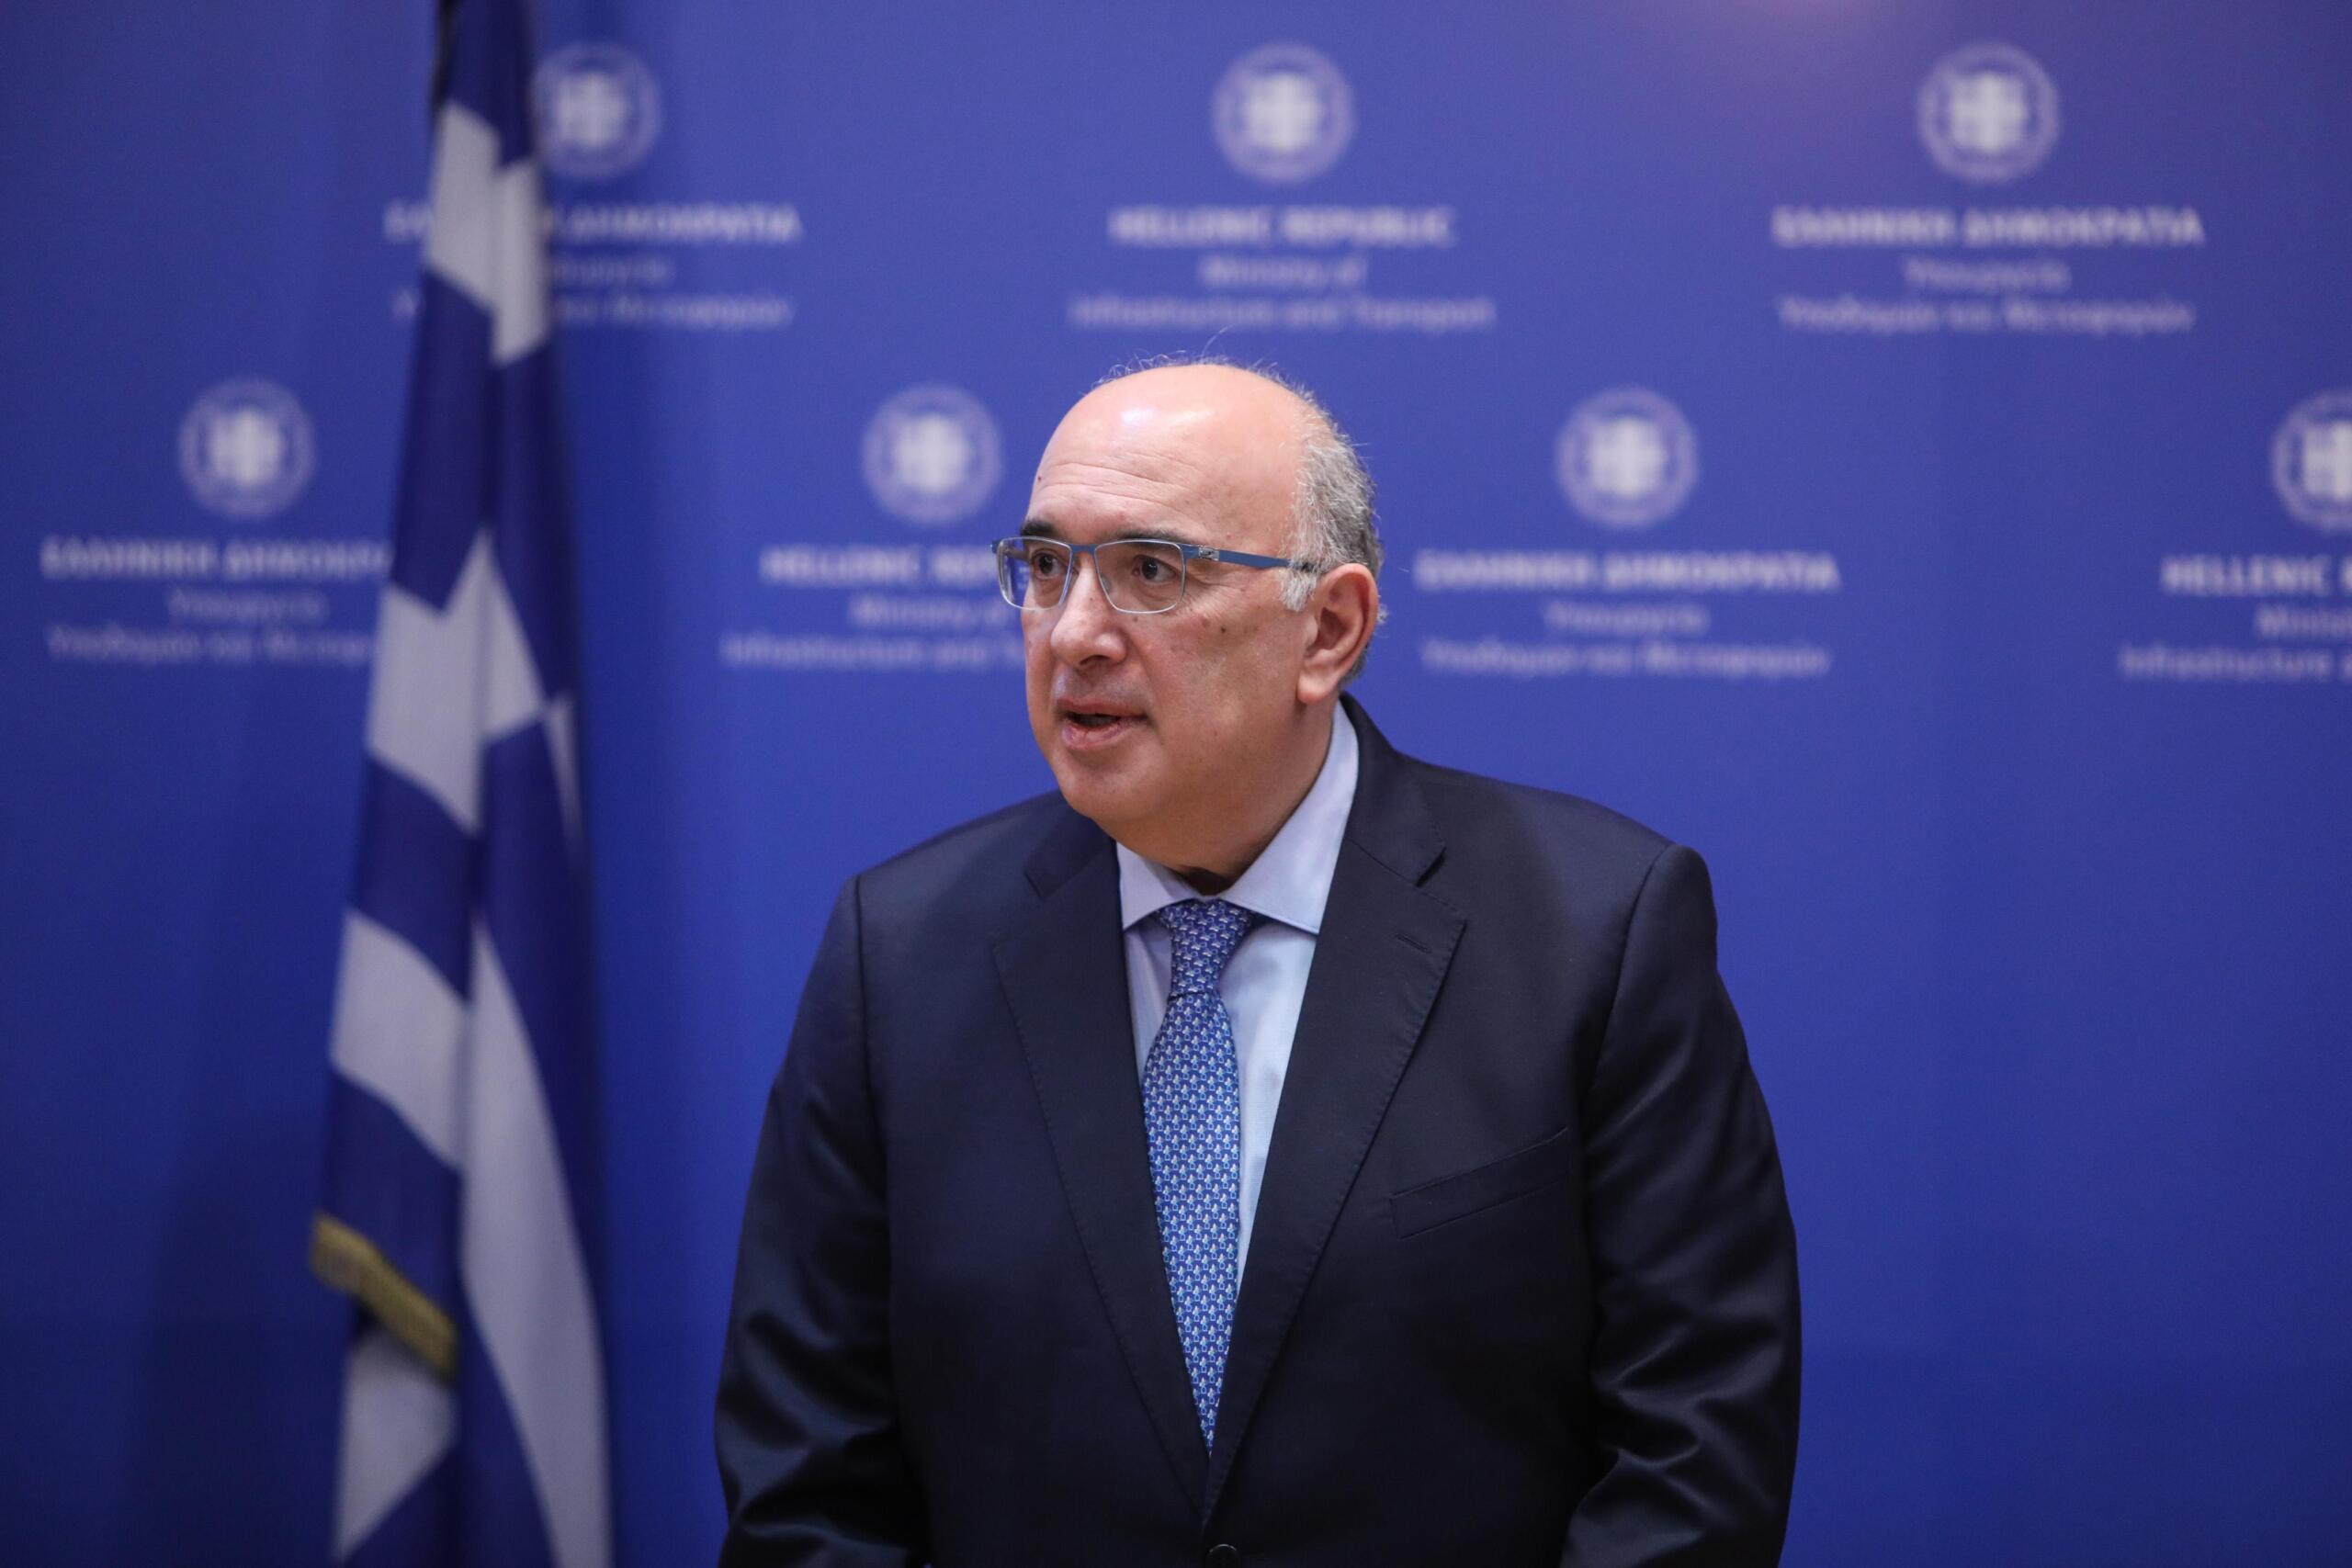 Μιχάλης Παπαδόπουλος: Η κυβέρνηση της ΝΔ απαντά σε κάθε κριτική με το έργο της.